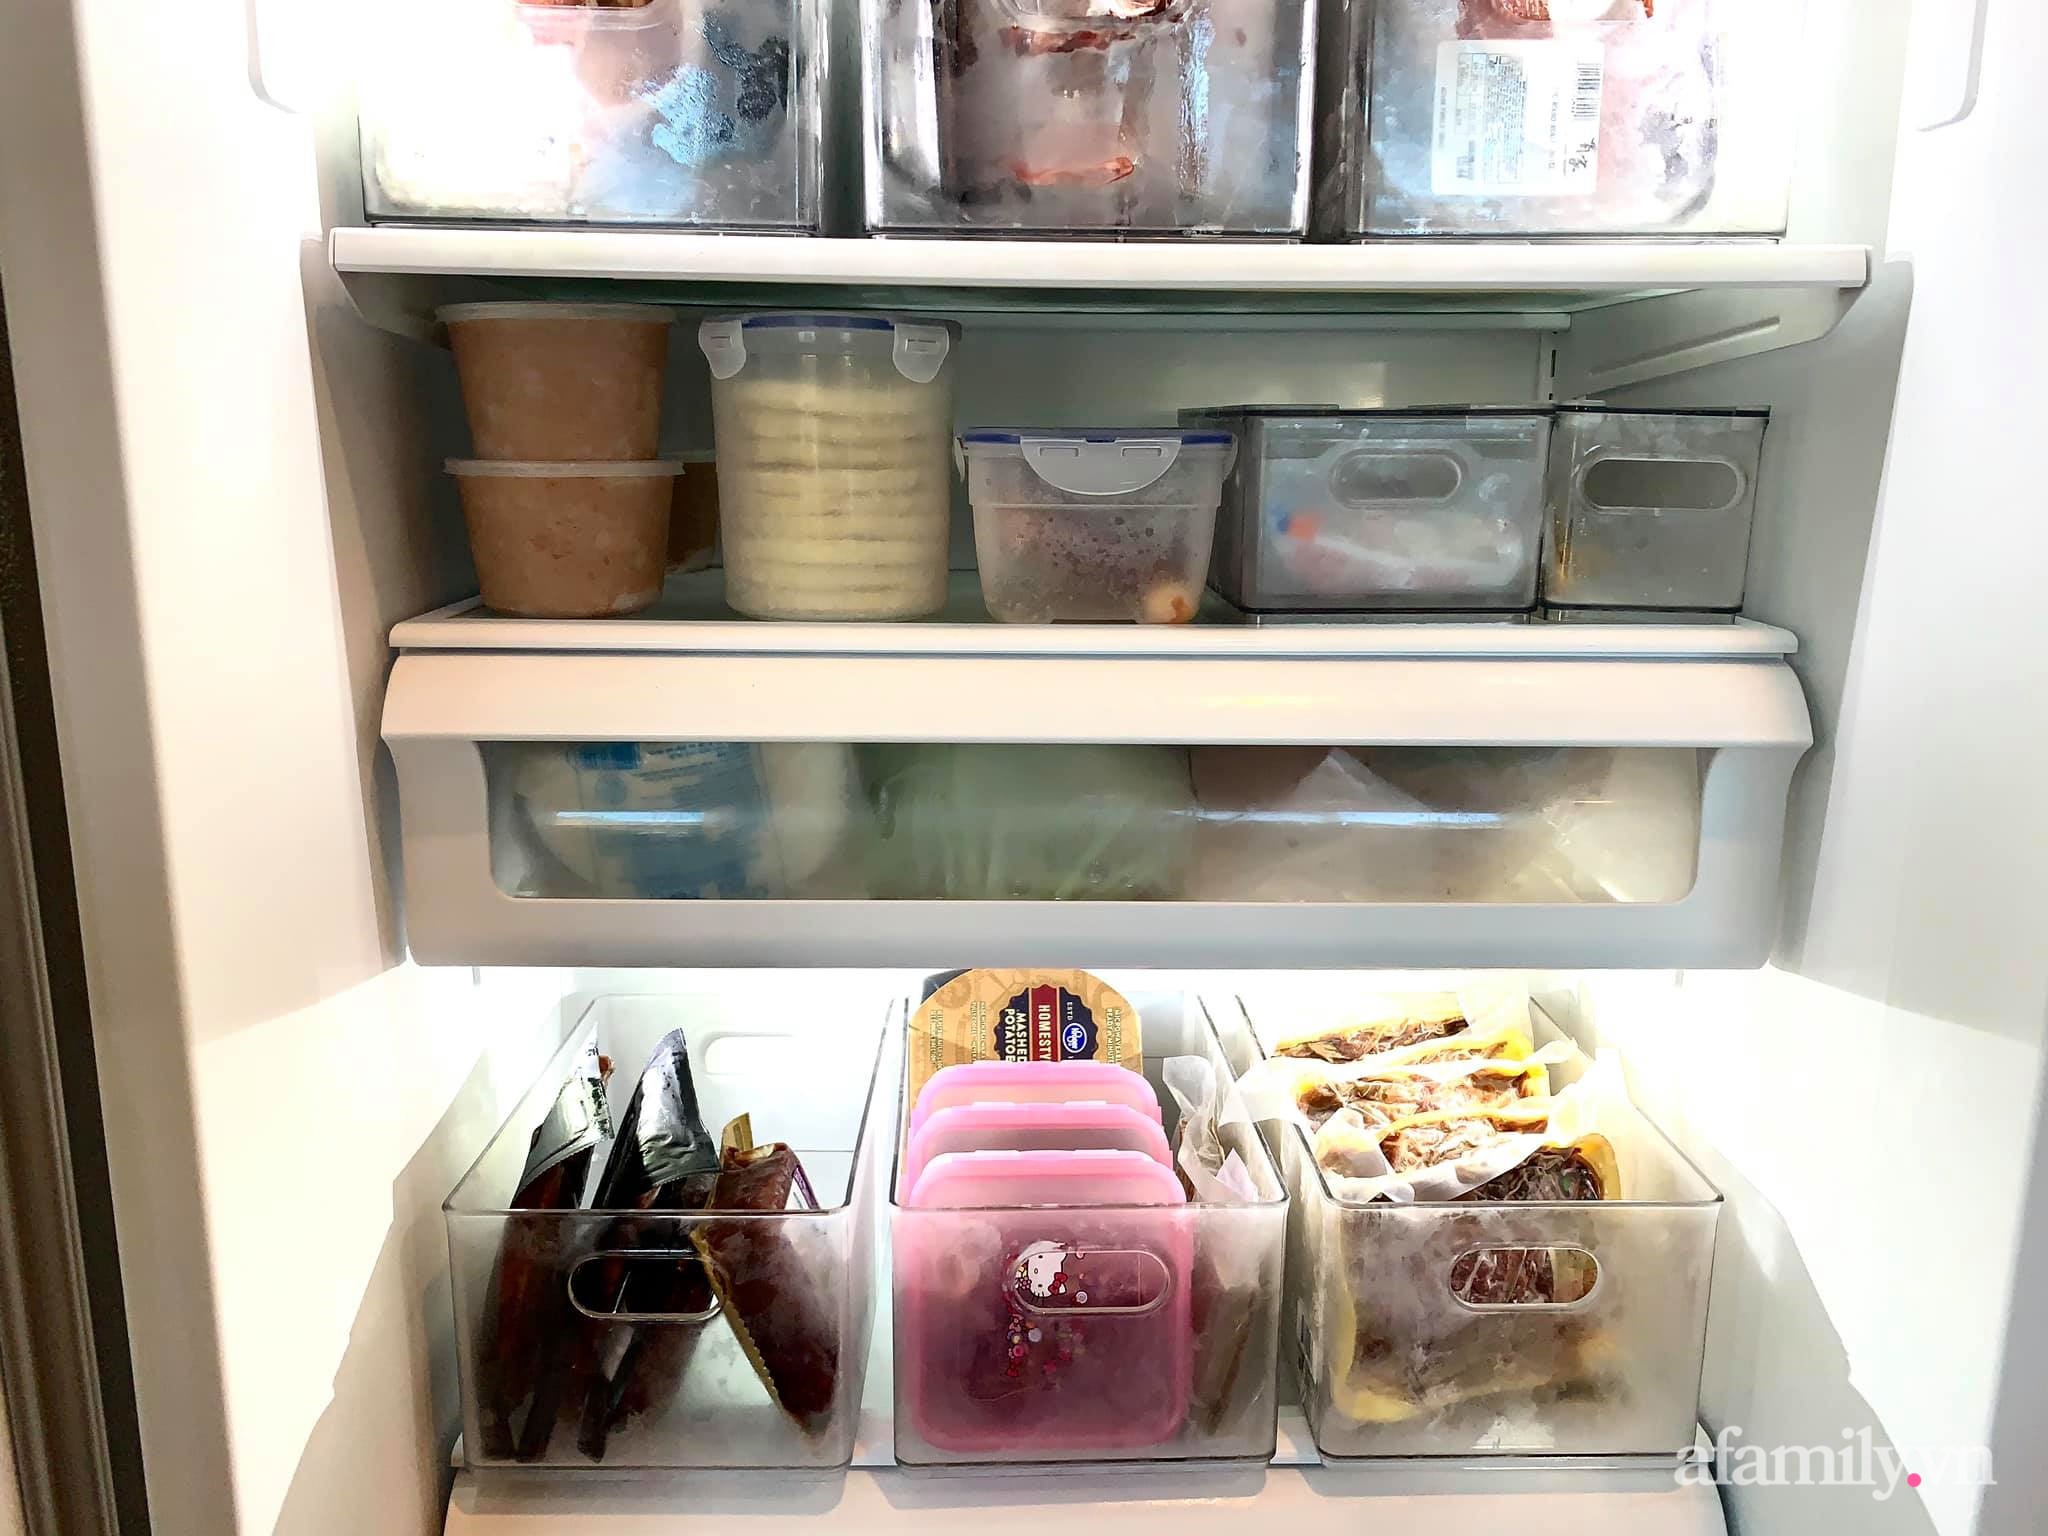 Tips sắp xếp thực phẩm đúng cách trong tủ lạnh ngày Tết từ chia sẻ của mẹ Việt tại Mỹ - Ảnh 6.